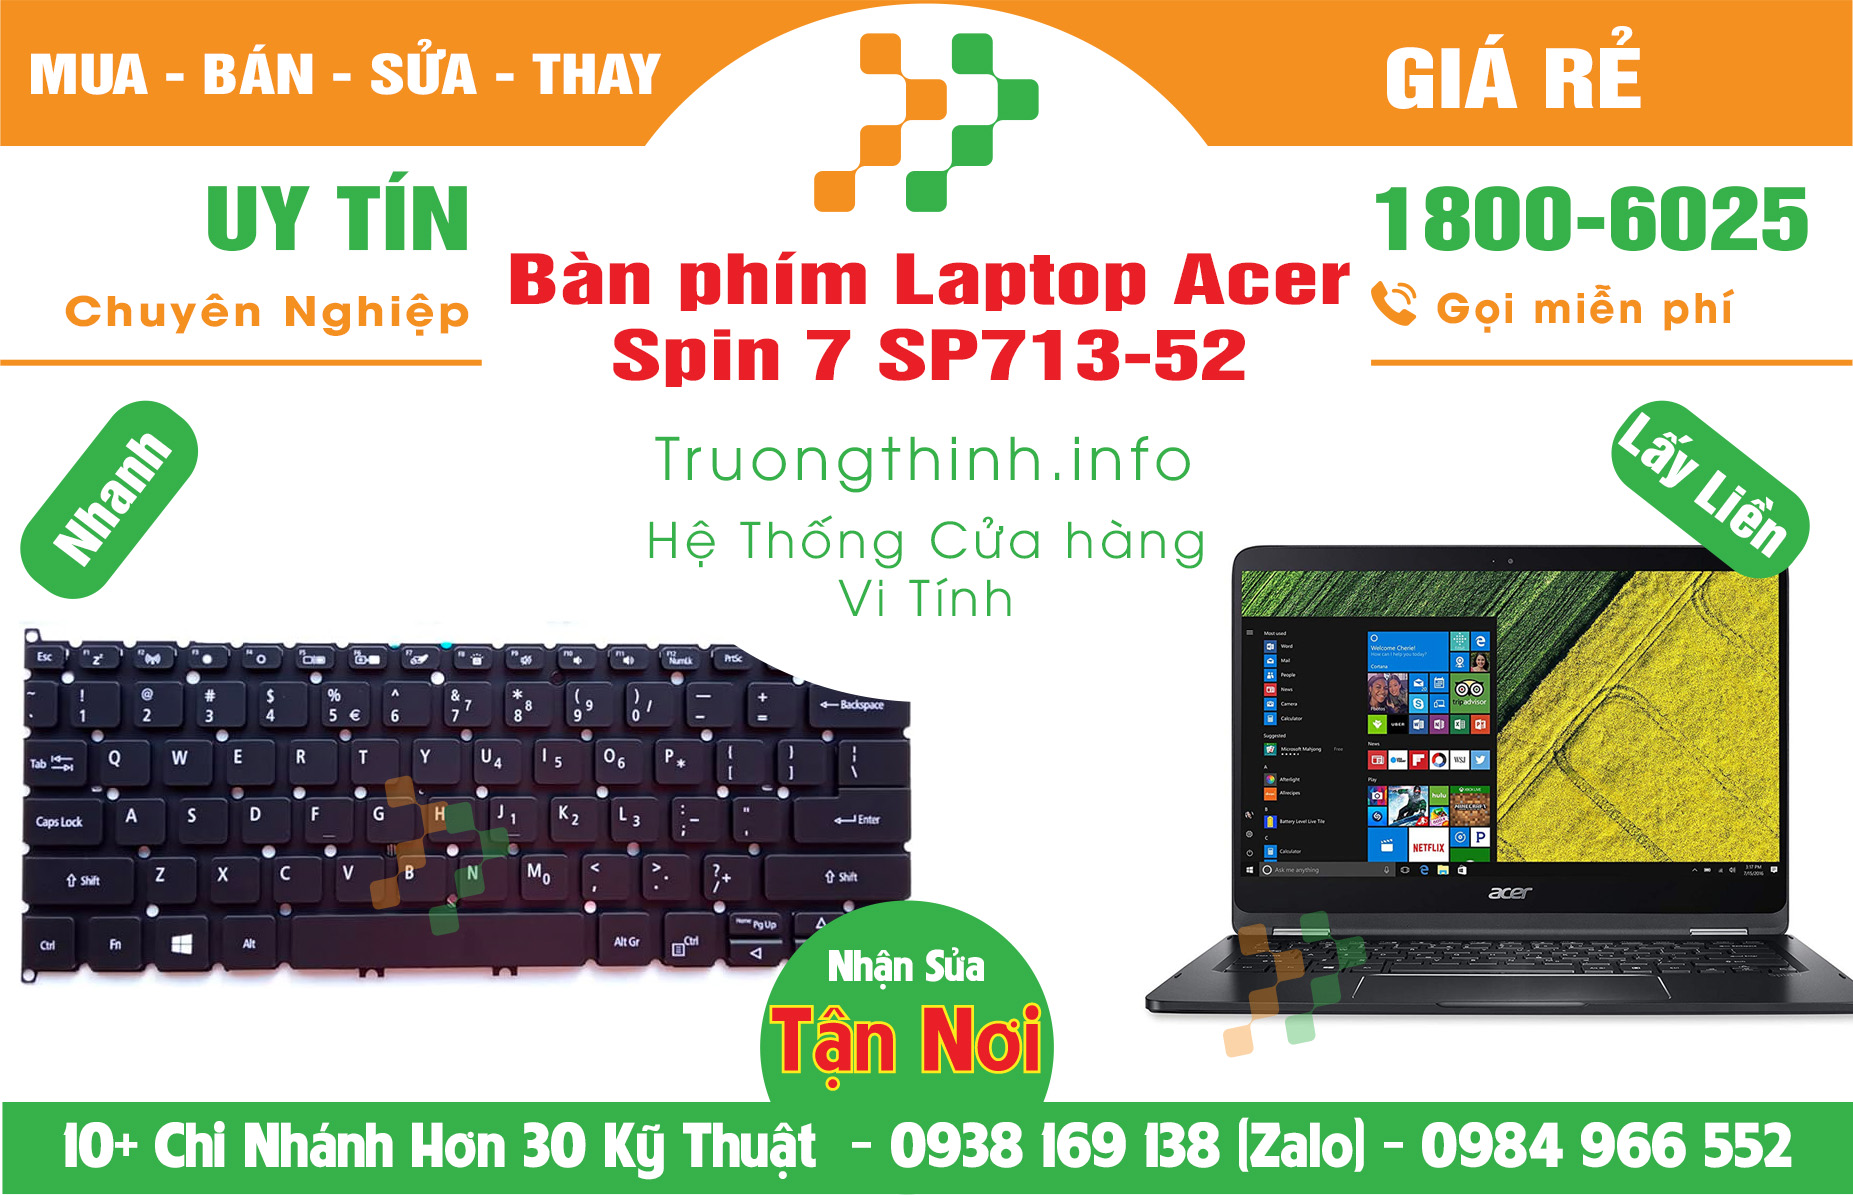 Mua bán Bàn Phím Laptop Acer Spin 7 SP713-52 Giá Rẻ | Vinh Tính Trường Thịnh Giá Rẻ